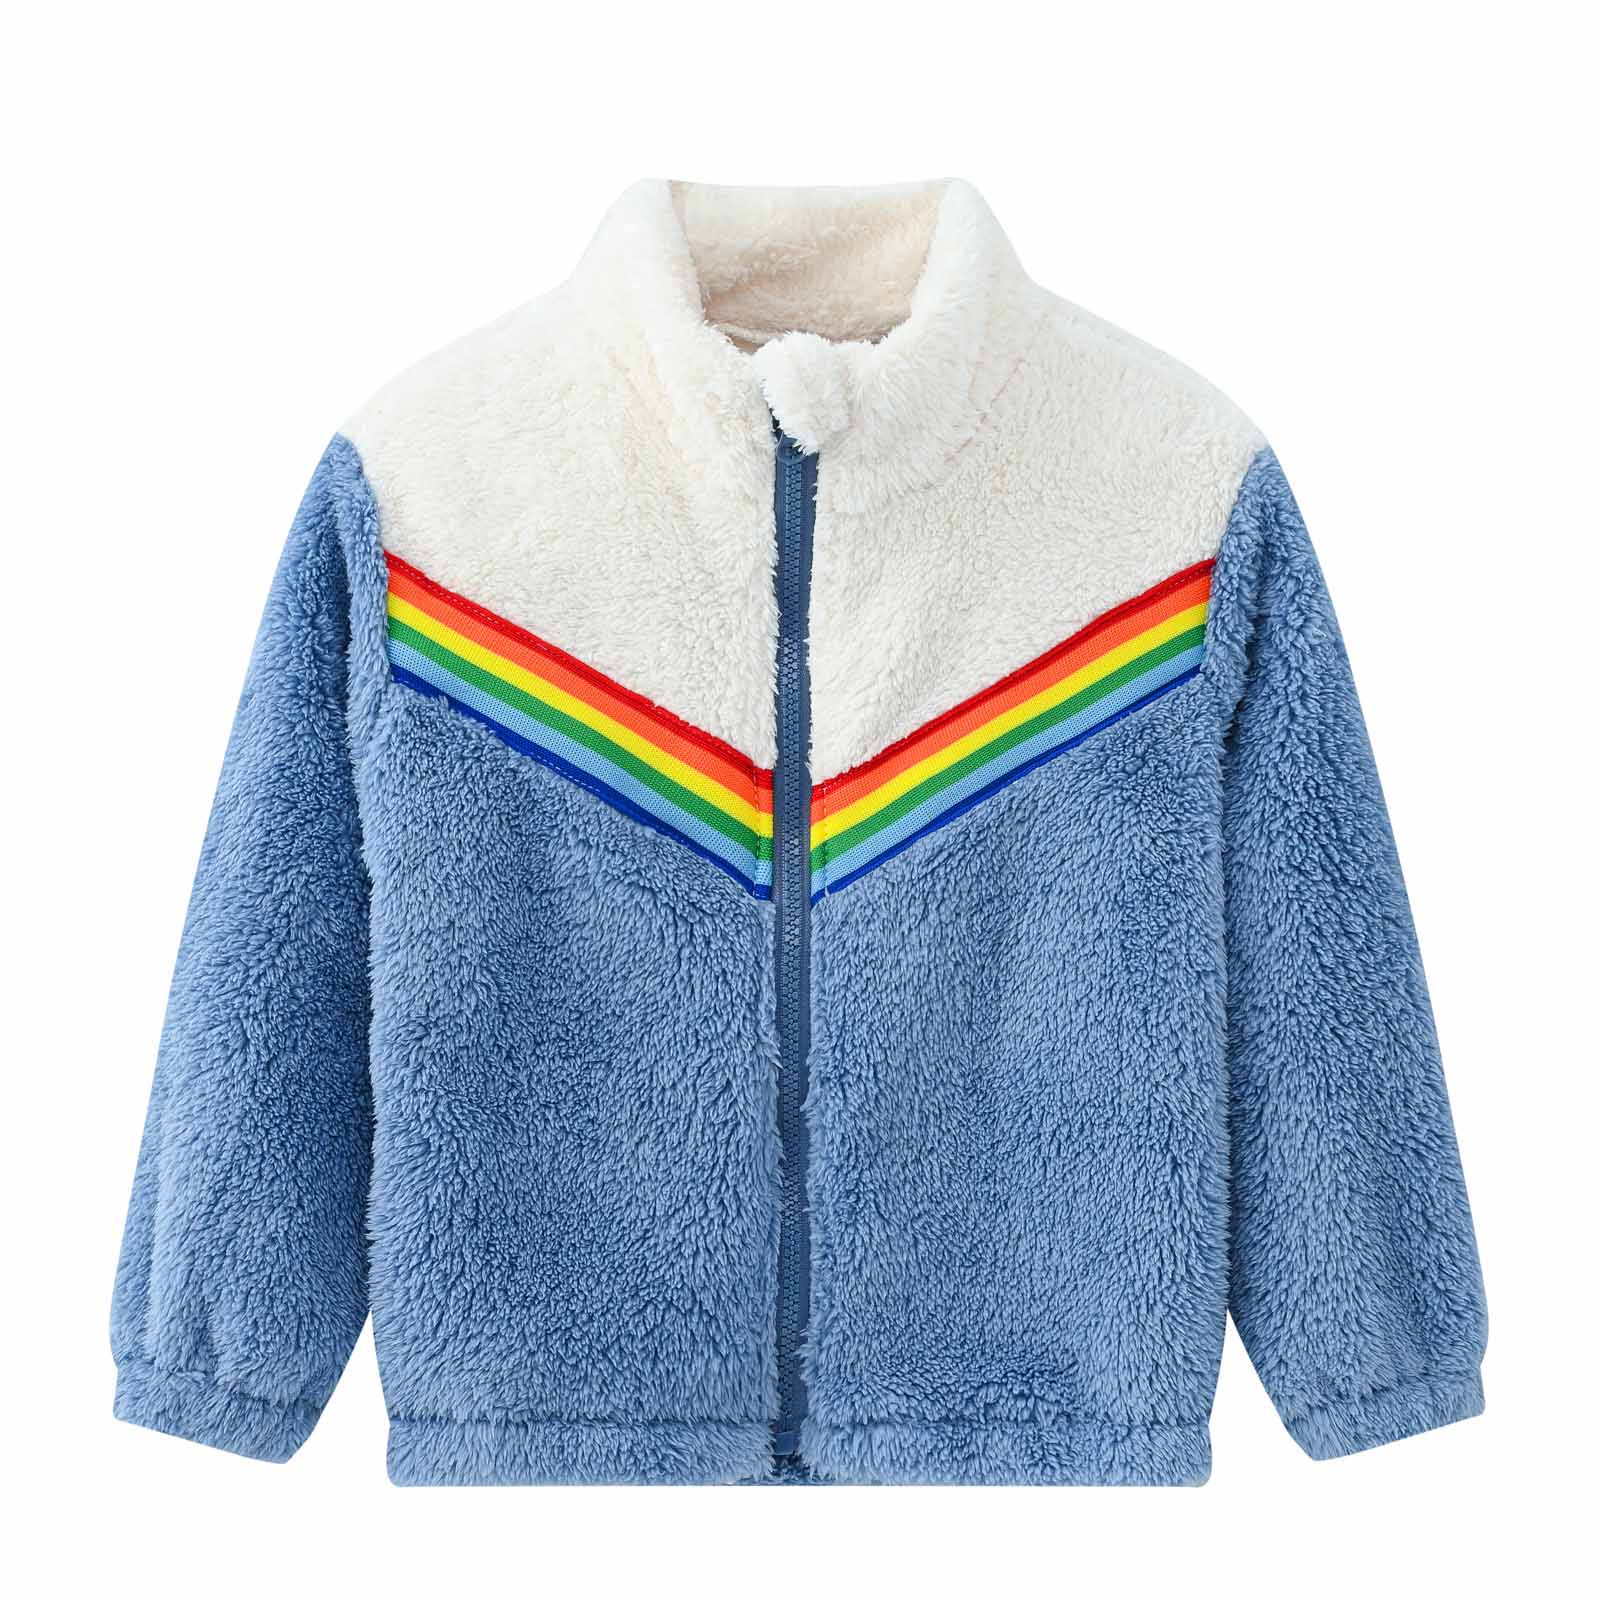 YYDGH Girls Zipper Jacket Fuzzy Sweatshirt Long Sleeve Casual Cozy Fleece Sherpa Outwear Coat Full-Zip Rainbow Jackets(Blue,3-4 Years) - image 1 of 8